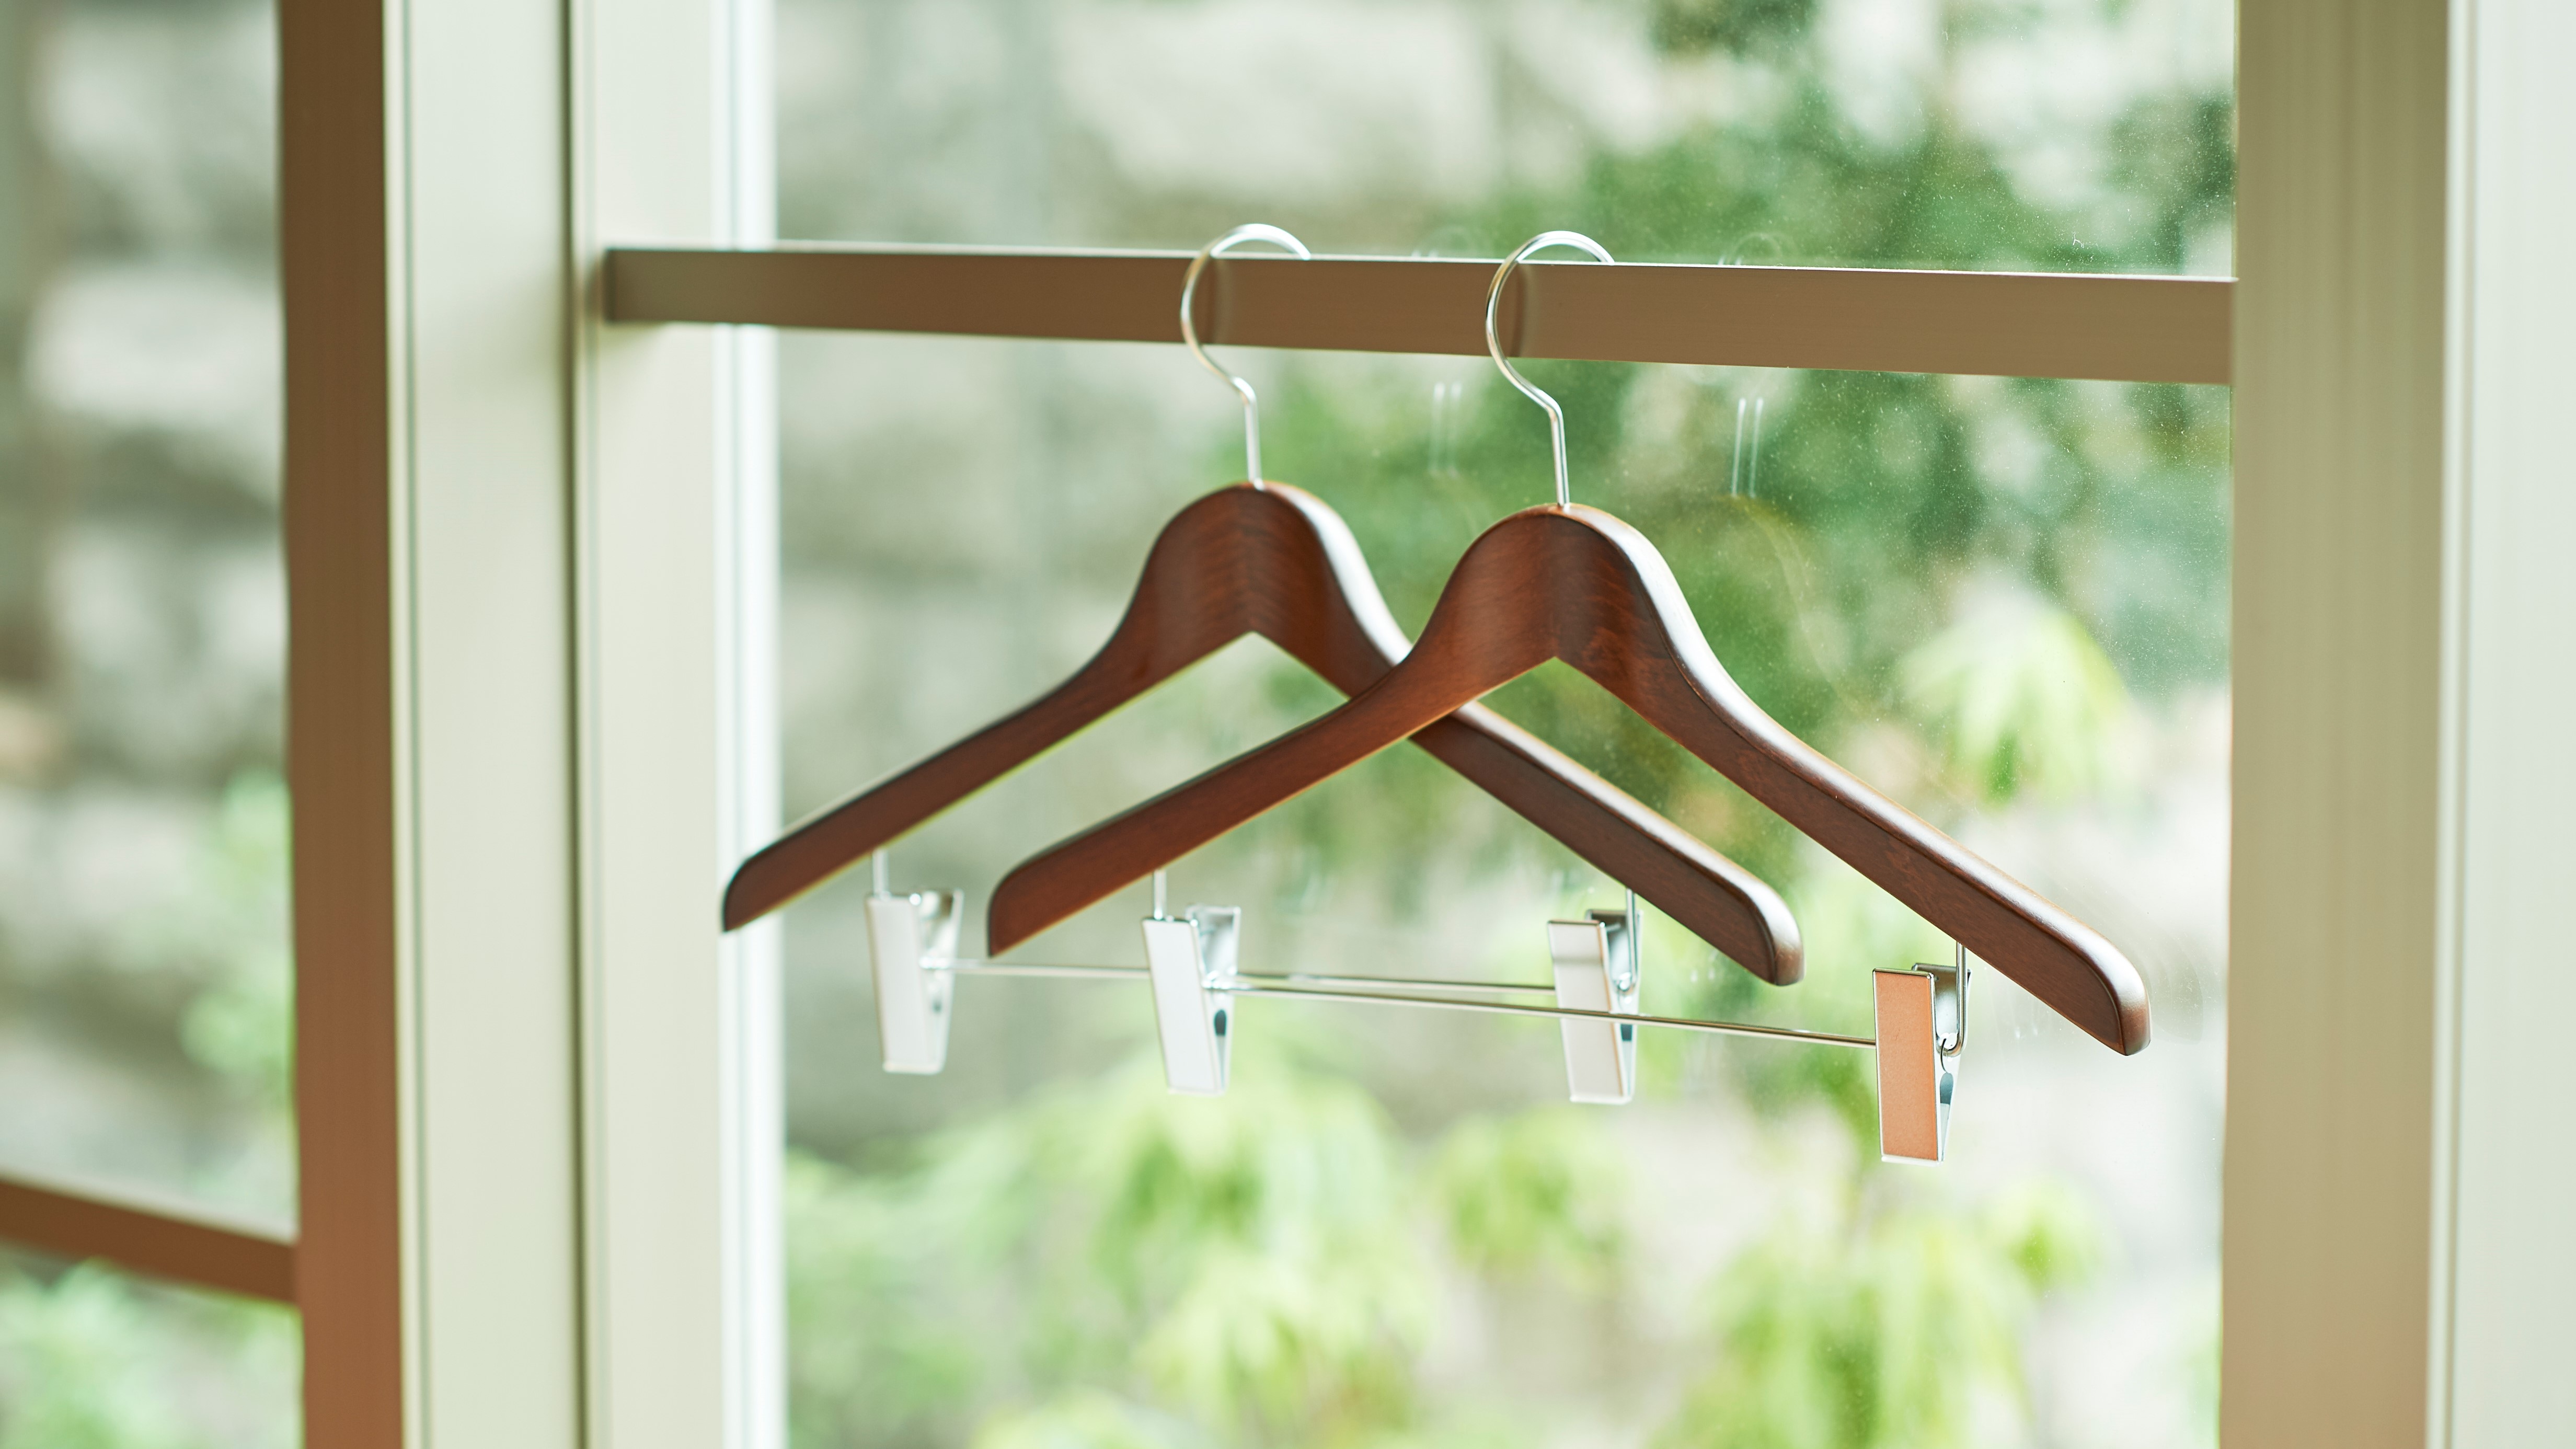 [客房/設備]您可以將重要的衣服放在衣架上。